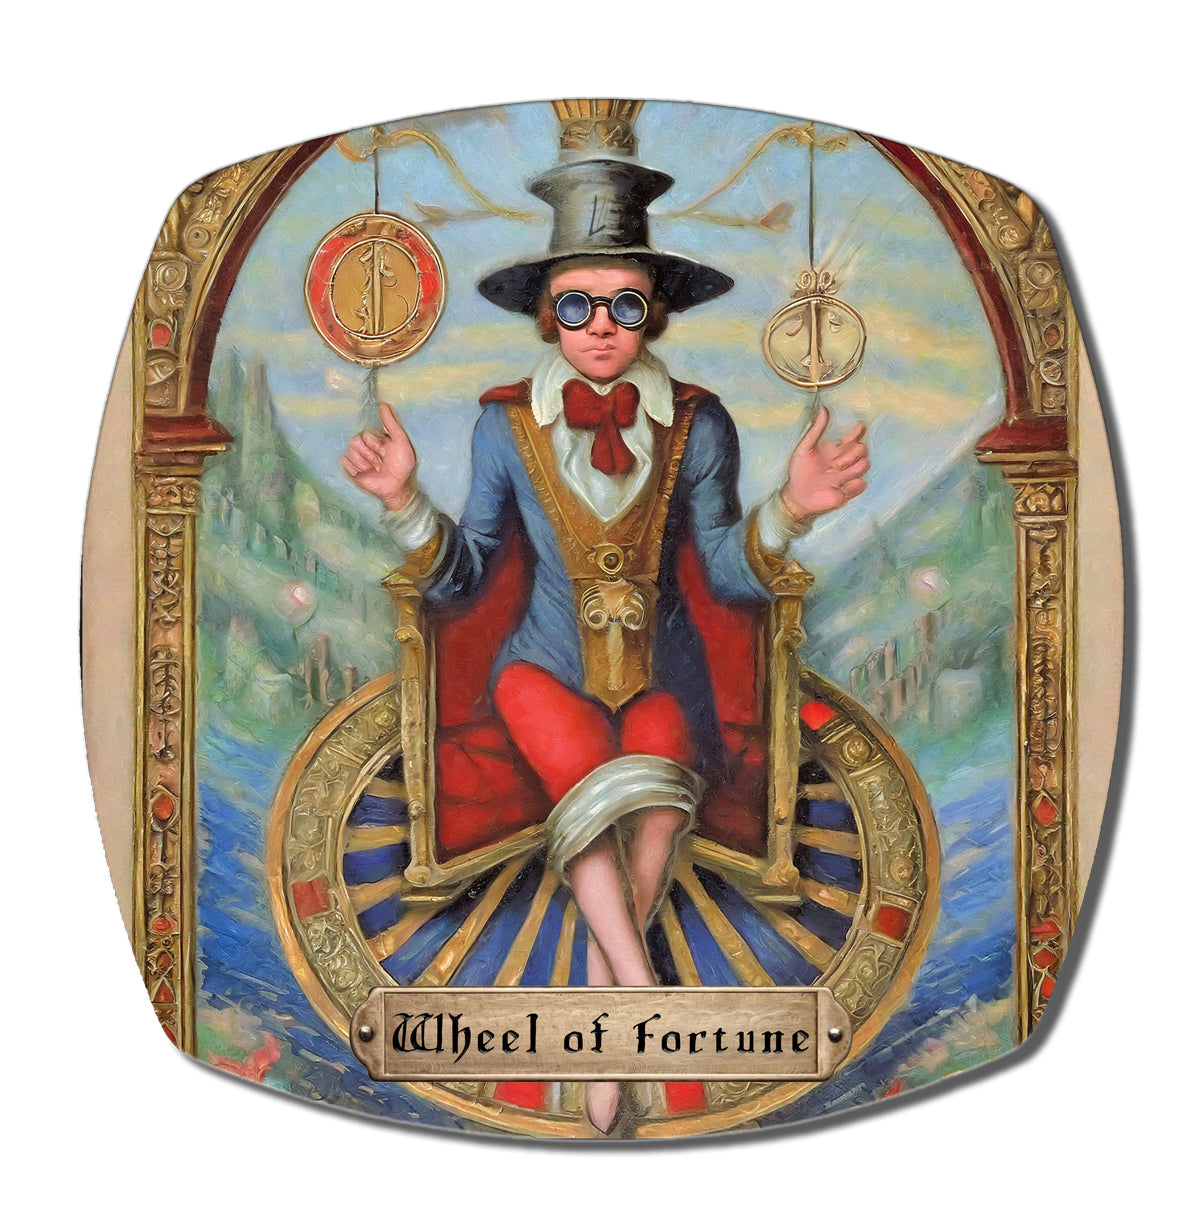 TAROT - "Wheel of Fortune" Dinner Plate